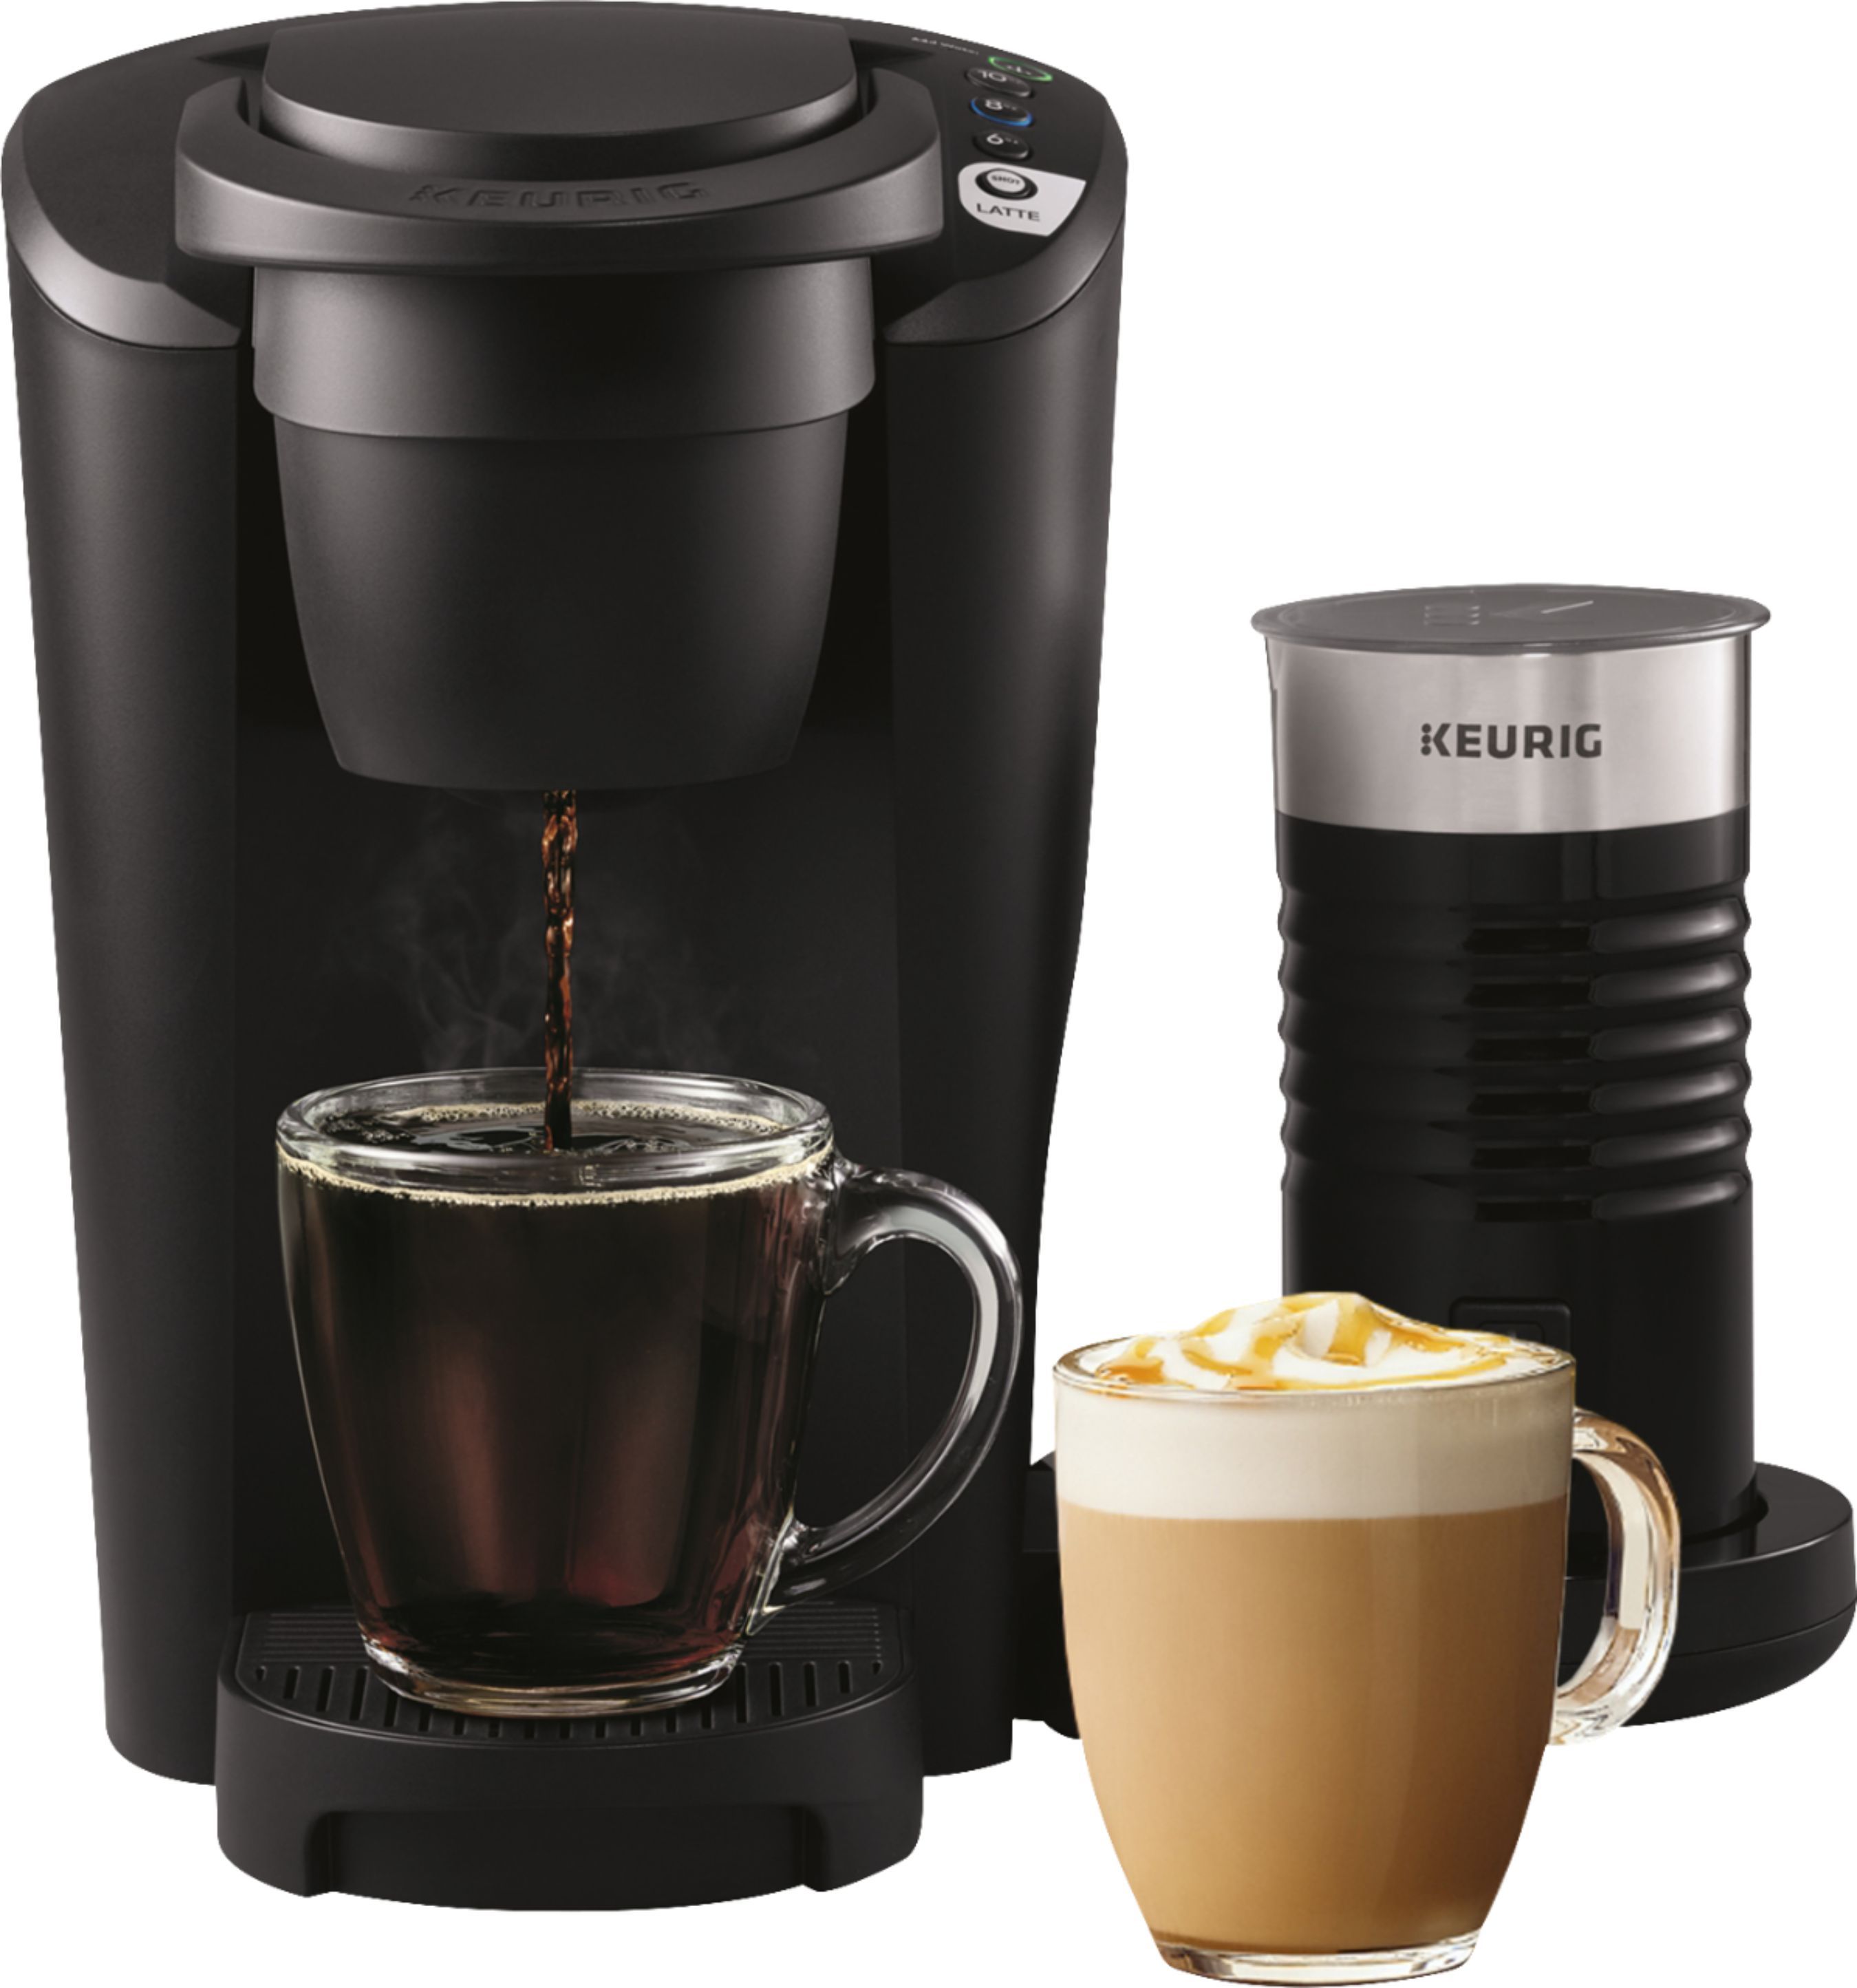 Keurig K Latte Single Serve K-Cup Pod Coffee Maker Black 5000200559 - Best Buy | Best Buy U.S.